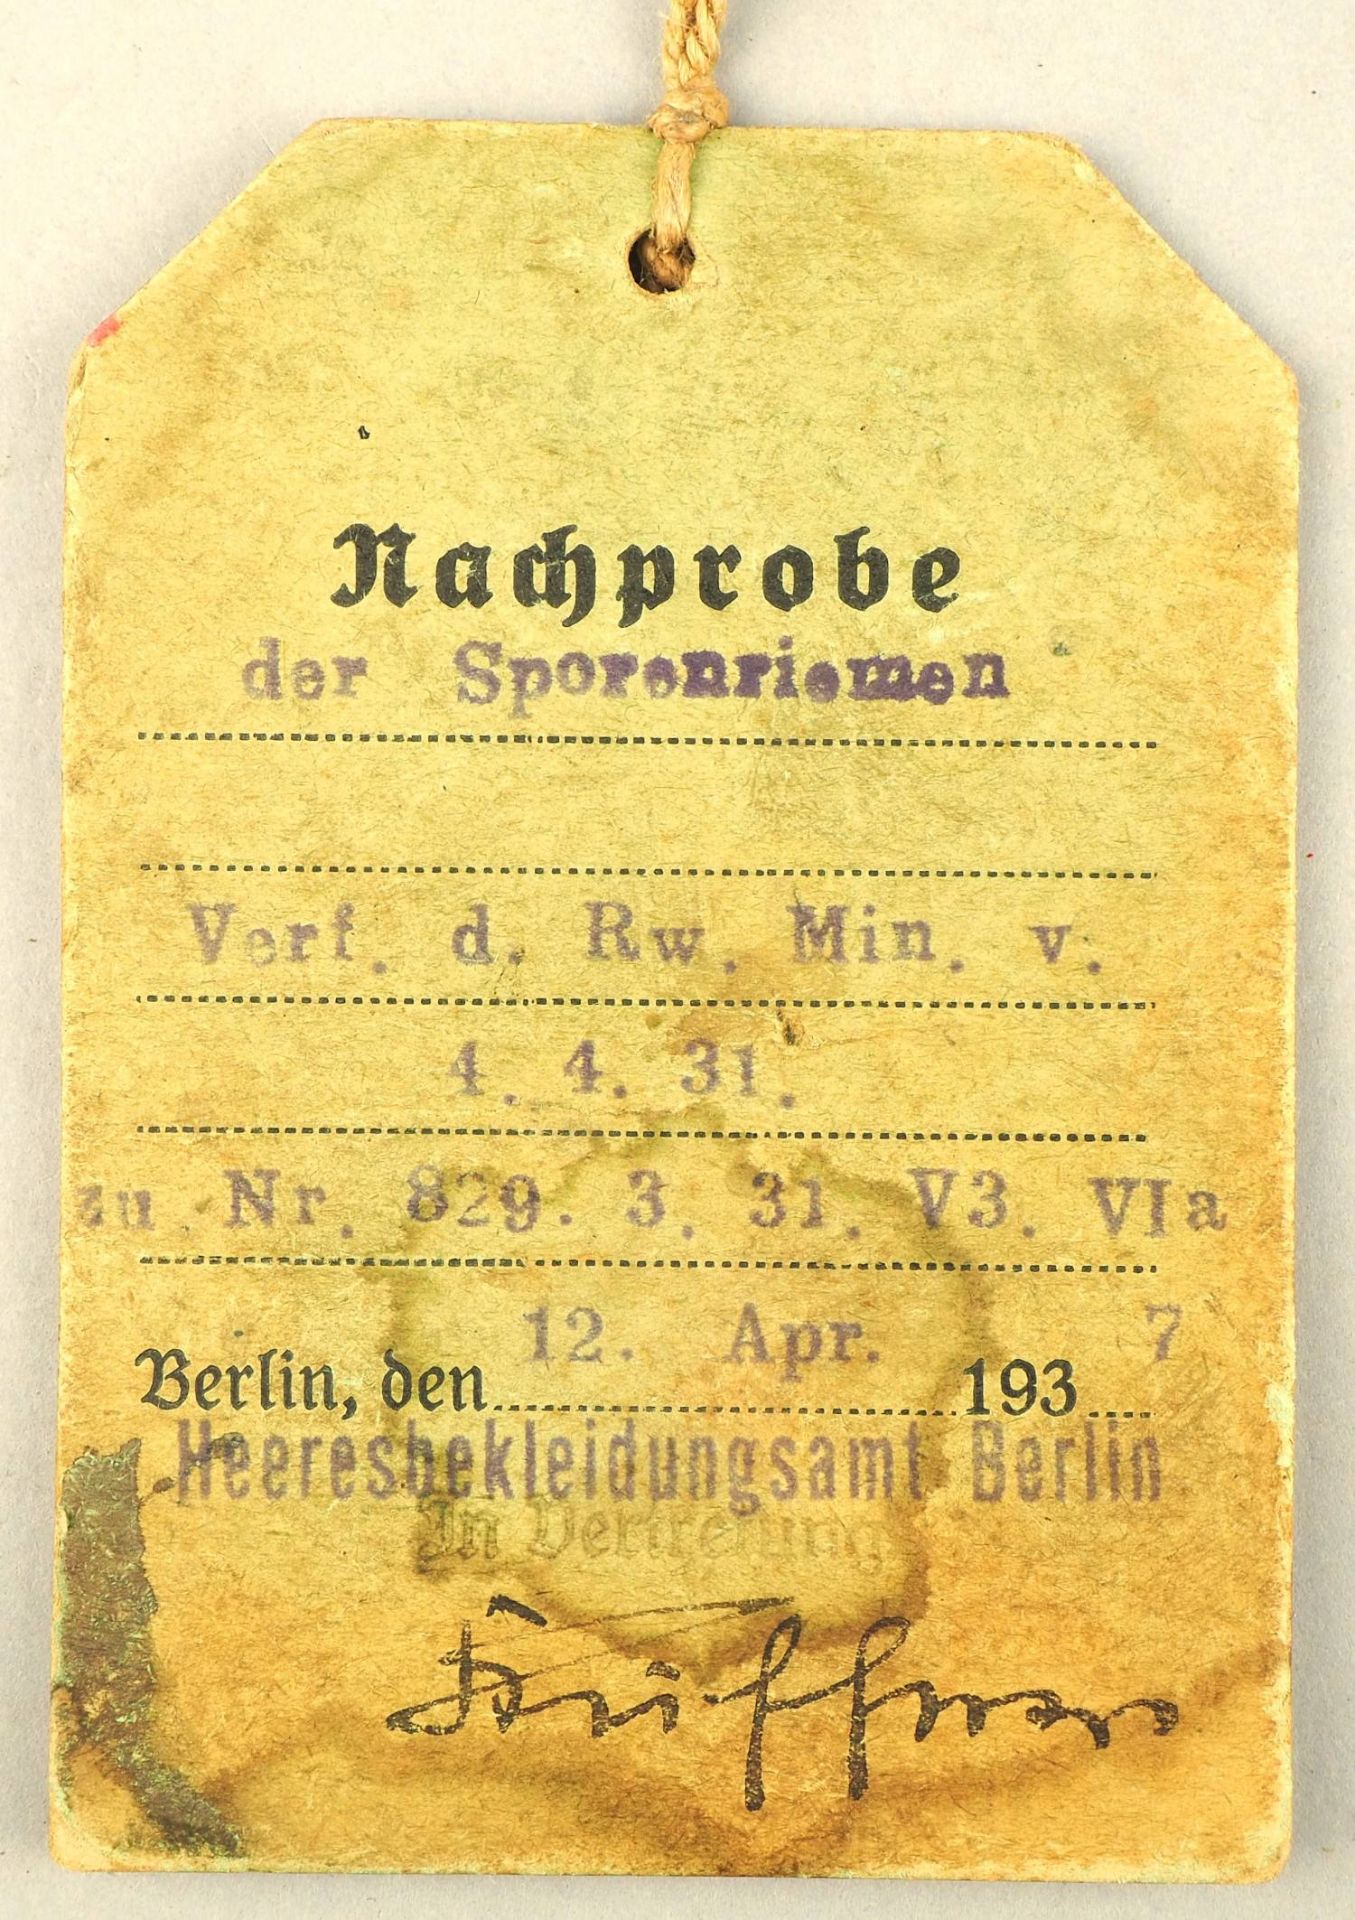 Wehrmacht: Heeresbekleidungsamt Berlin seltene Sporenriemen Nachprobe mit Siegel-Etikett, 1937 - Bild 4 aus 4